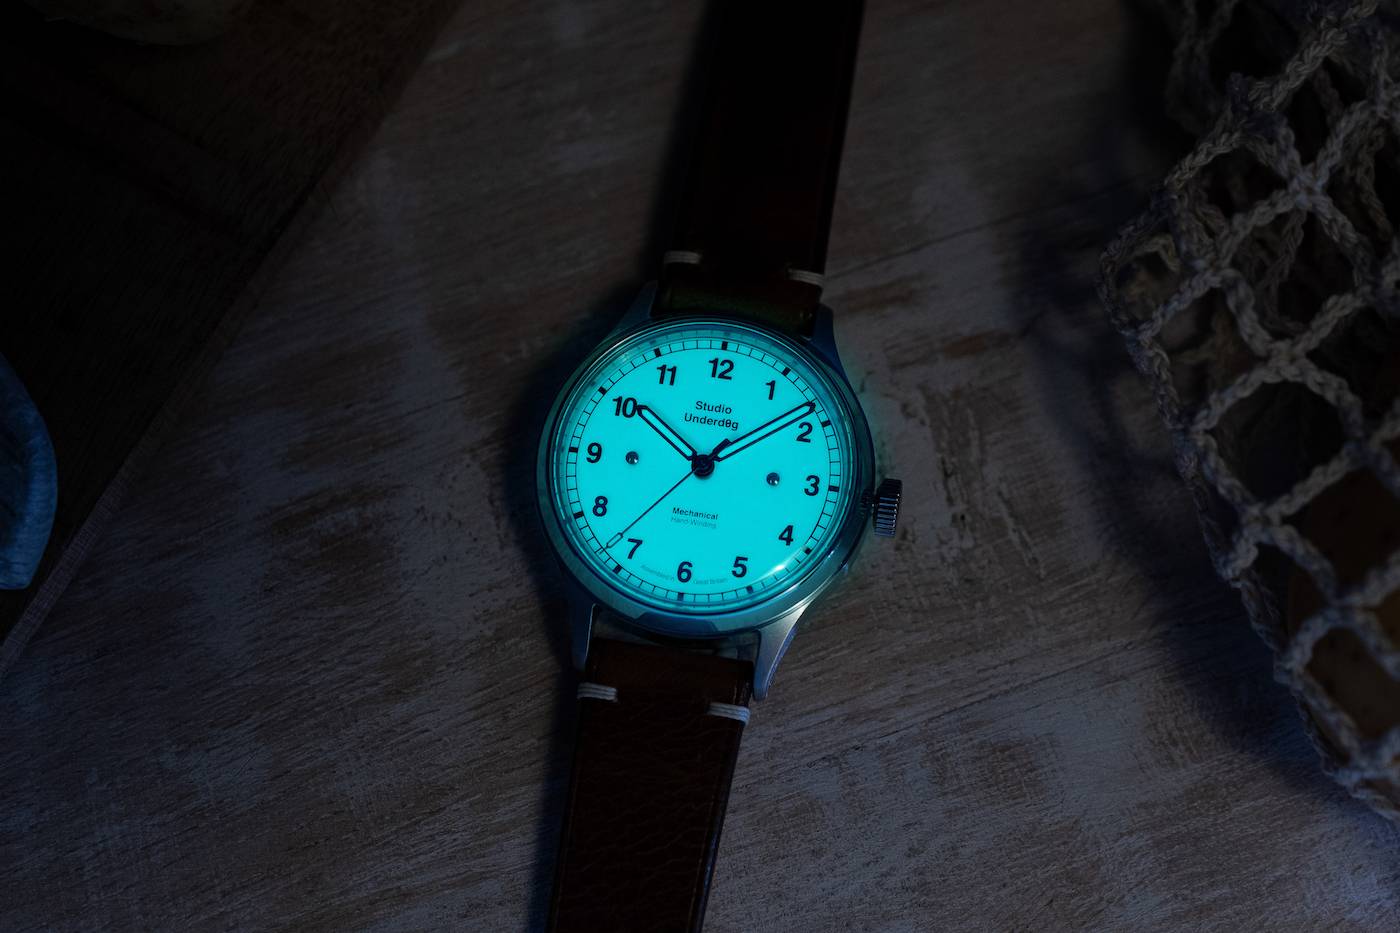 Studio Underd0g lanza nuevos relojes de campo con un toque diferente